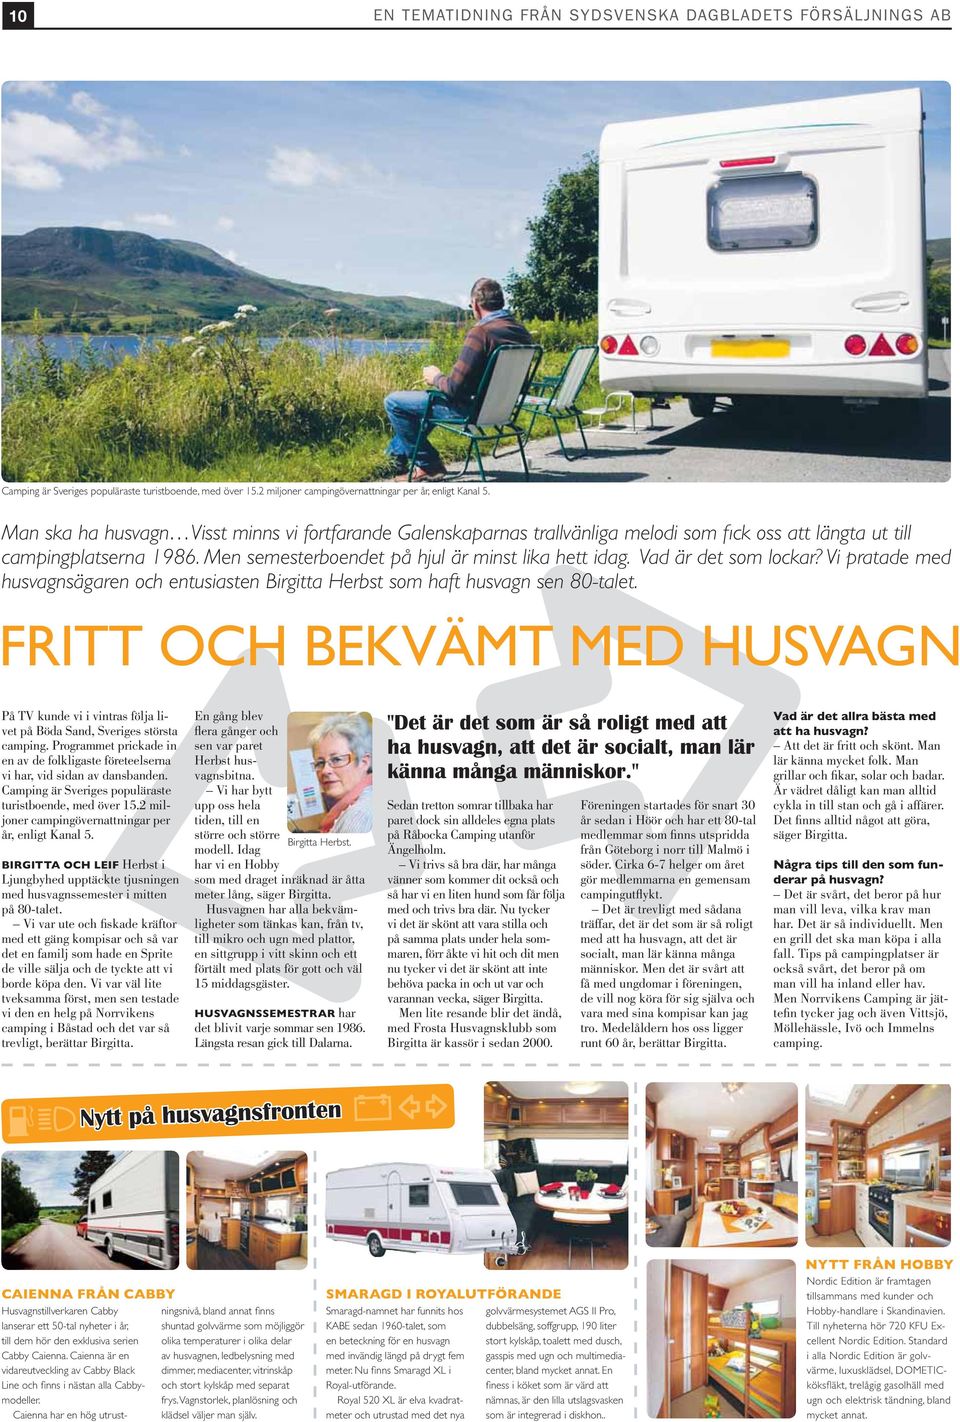 Vad är det som lockar? Vi pratade med husvagnsägaren och entusiasten Birgitta Herbst som haft husvagn sen 80-talet.